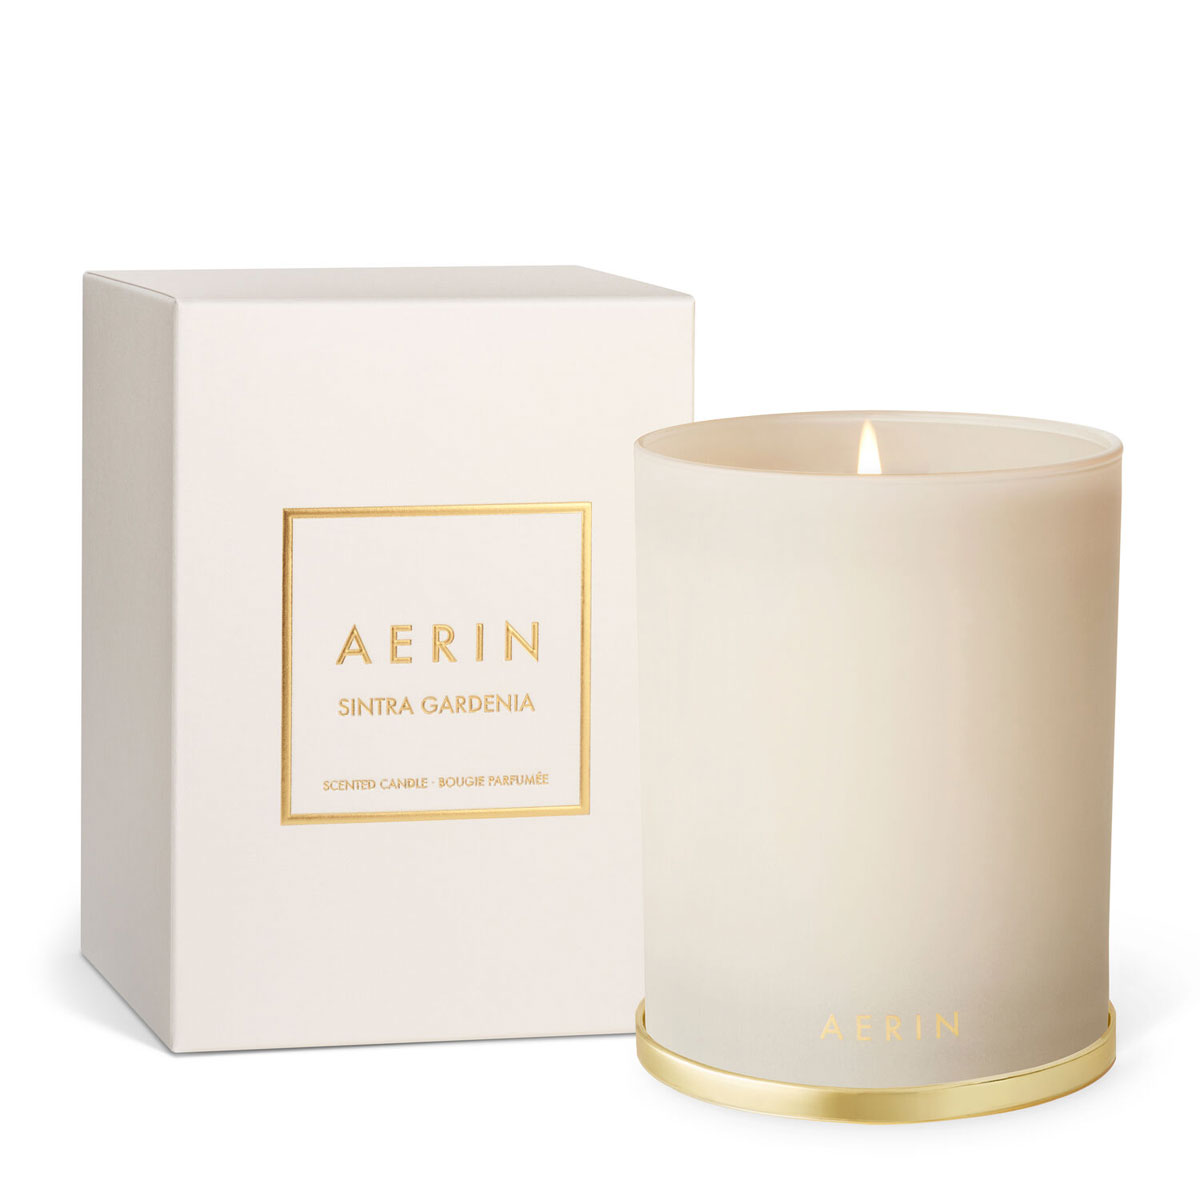 Aerin Sintra Gardenia Single Wick Candle in Gift Box